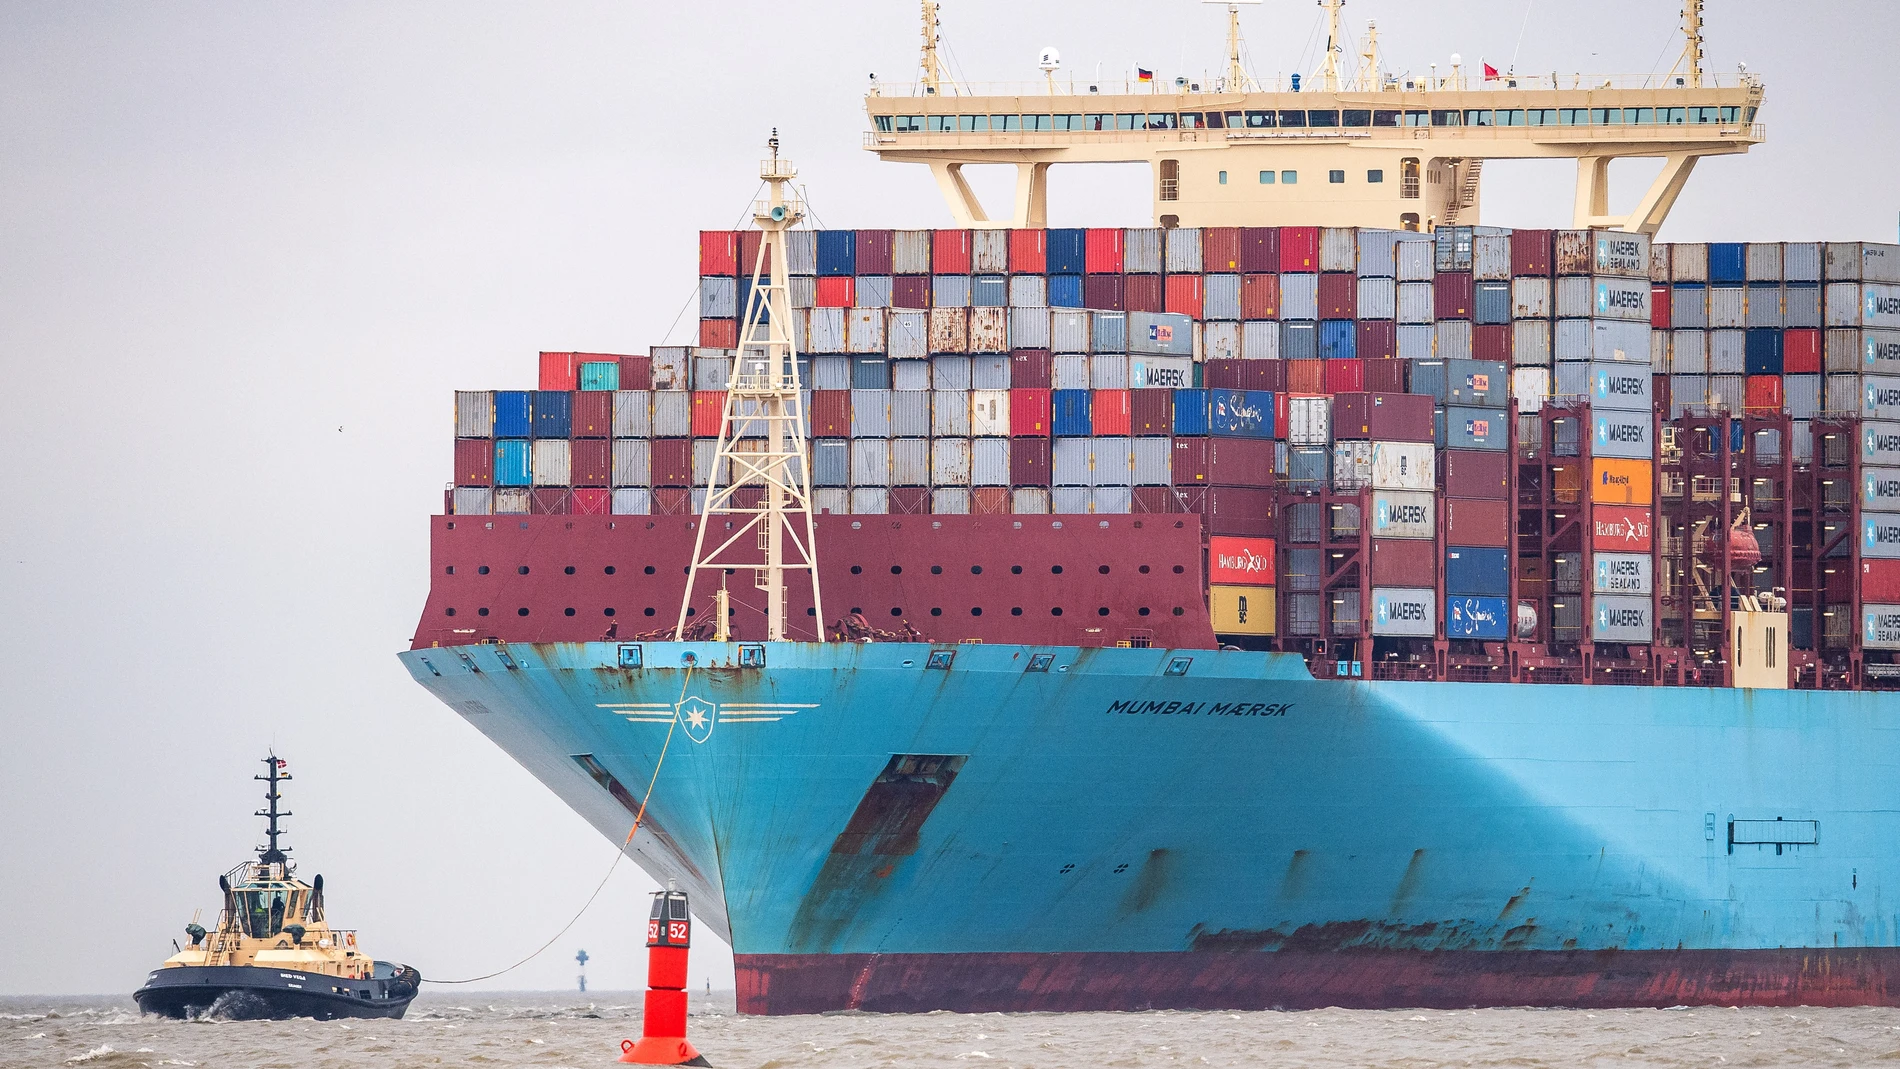 O.Próximo.- Maersk desviará sus barcos al cabo de Buena Esperanza "en el futuro previsible" por el riesgo en mar Rojo